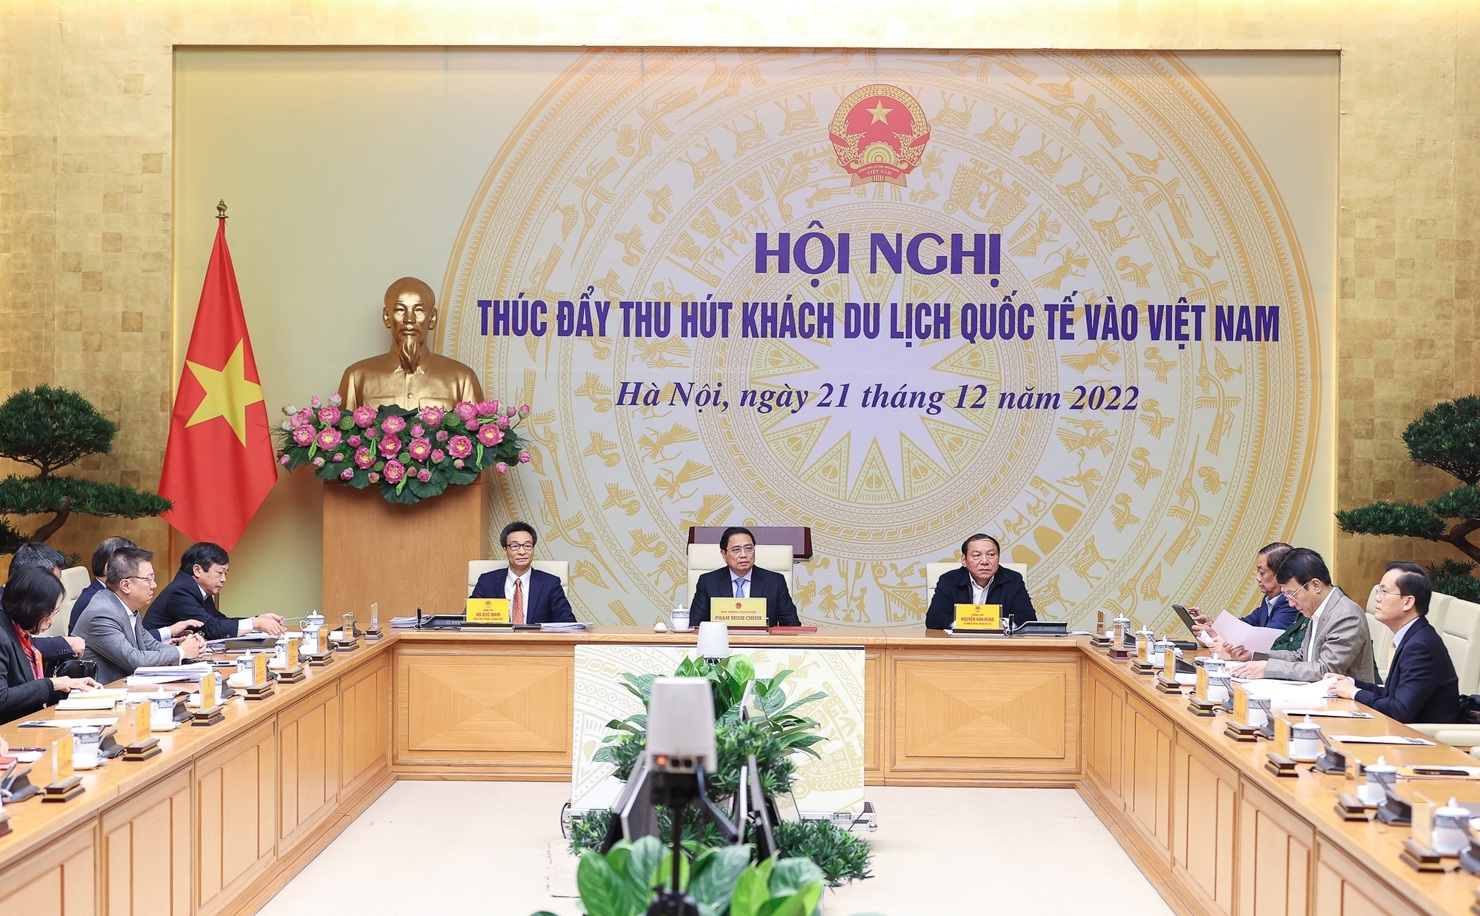 Toàn cảnh Hội nghị thúc đẩy thu hút khách du lịch quốc tế vào Việt Nam.